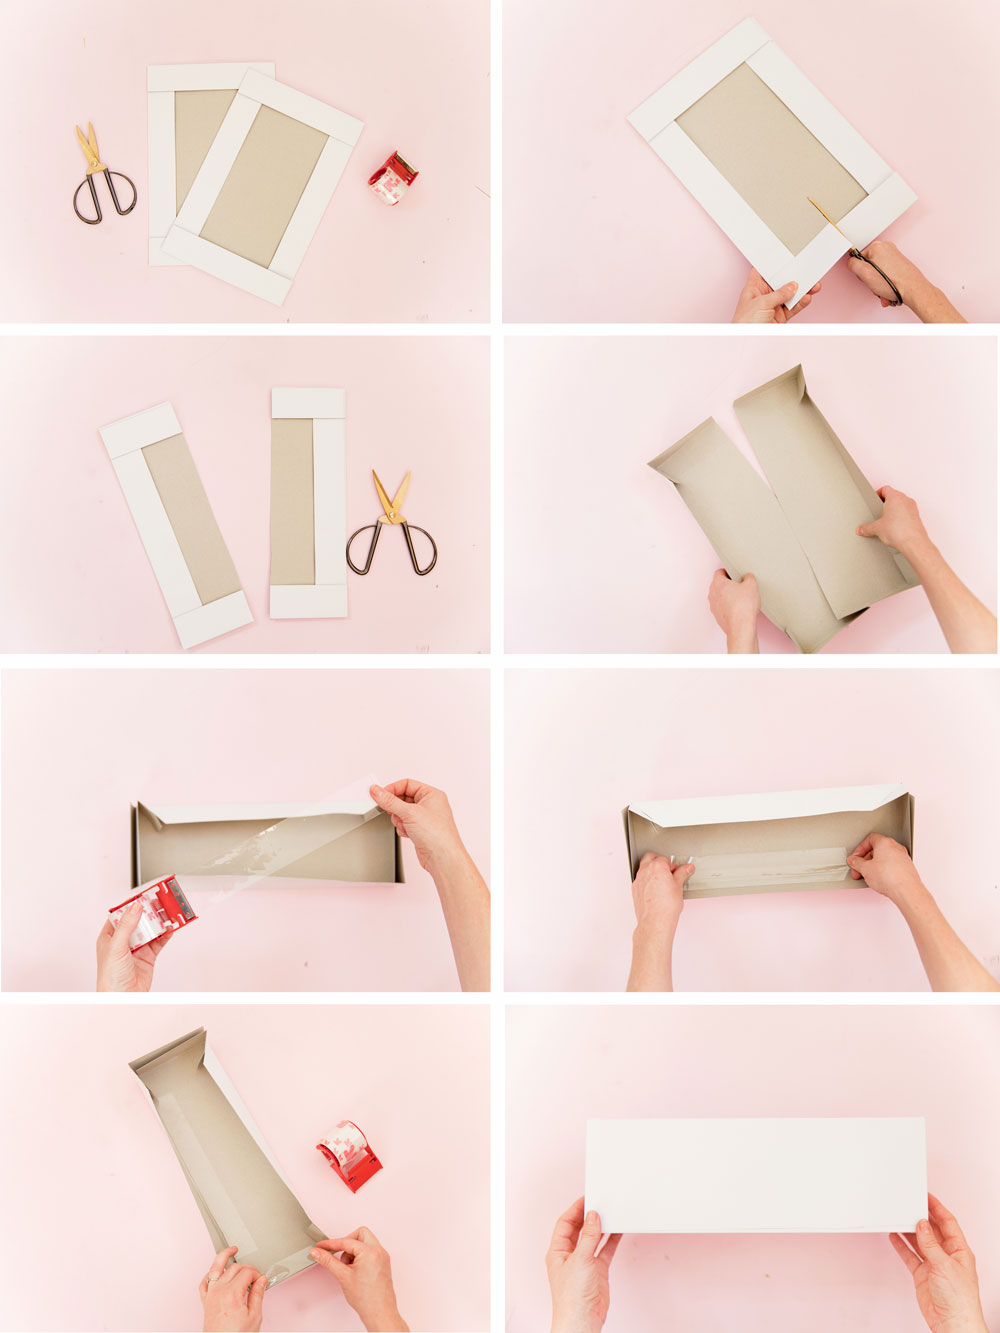 Завернуть подарки пошагово. Как правильно упаковать подарок в подарочную бумагу. Как завернуть подарок в оберточную бумагу. Как правильно упаковать коробку в подарочную бумагу. Как правильно упаковывать подарки в упаковочную бумагу.